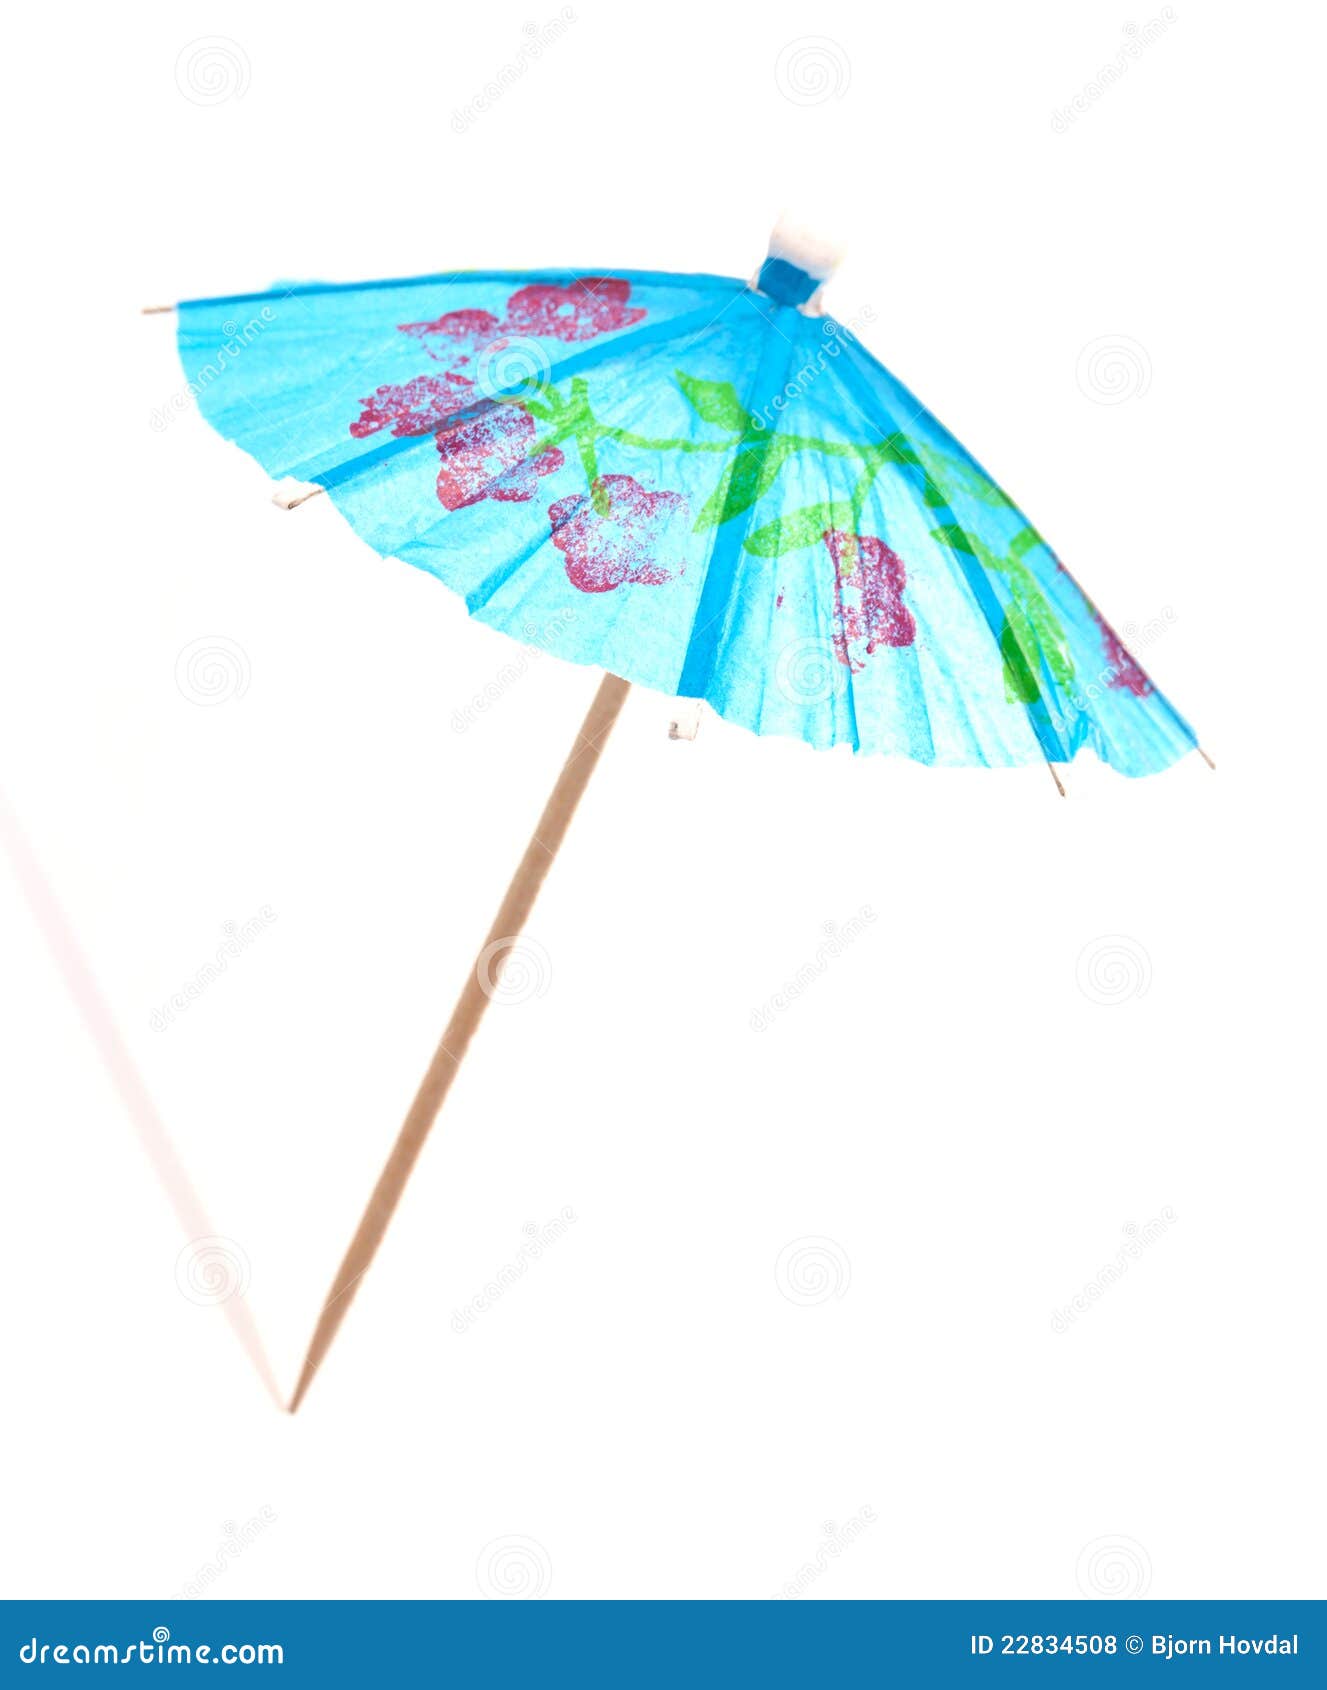 Guarda-chuva do cocktail. Um guarda-chuva azul do cocktail no fundo branco